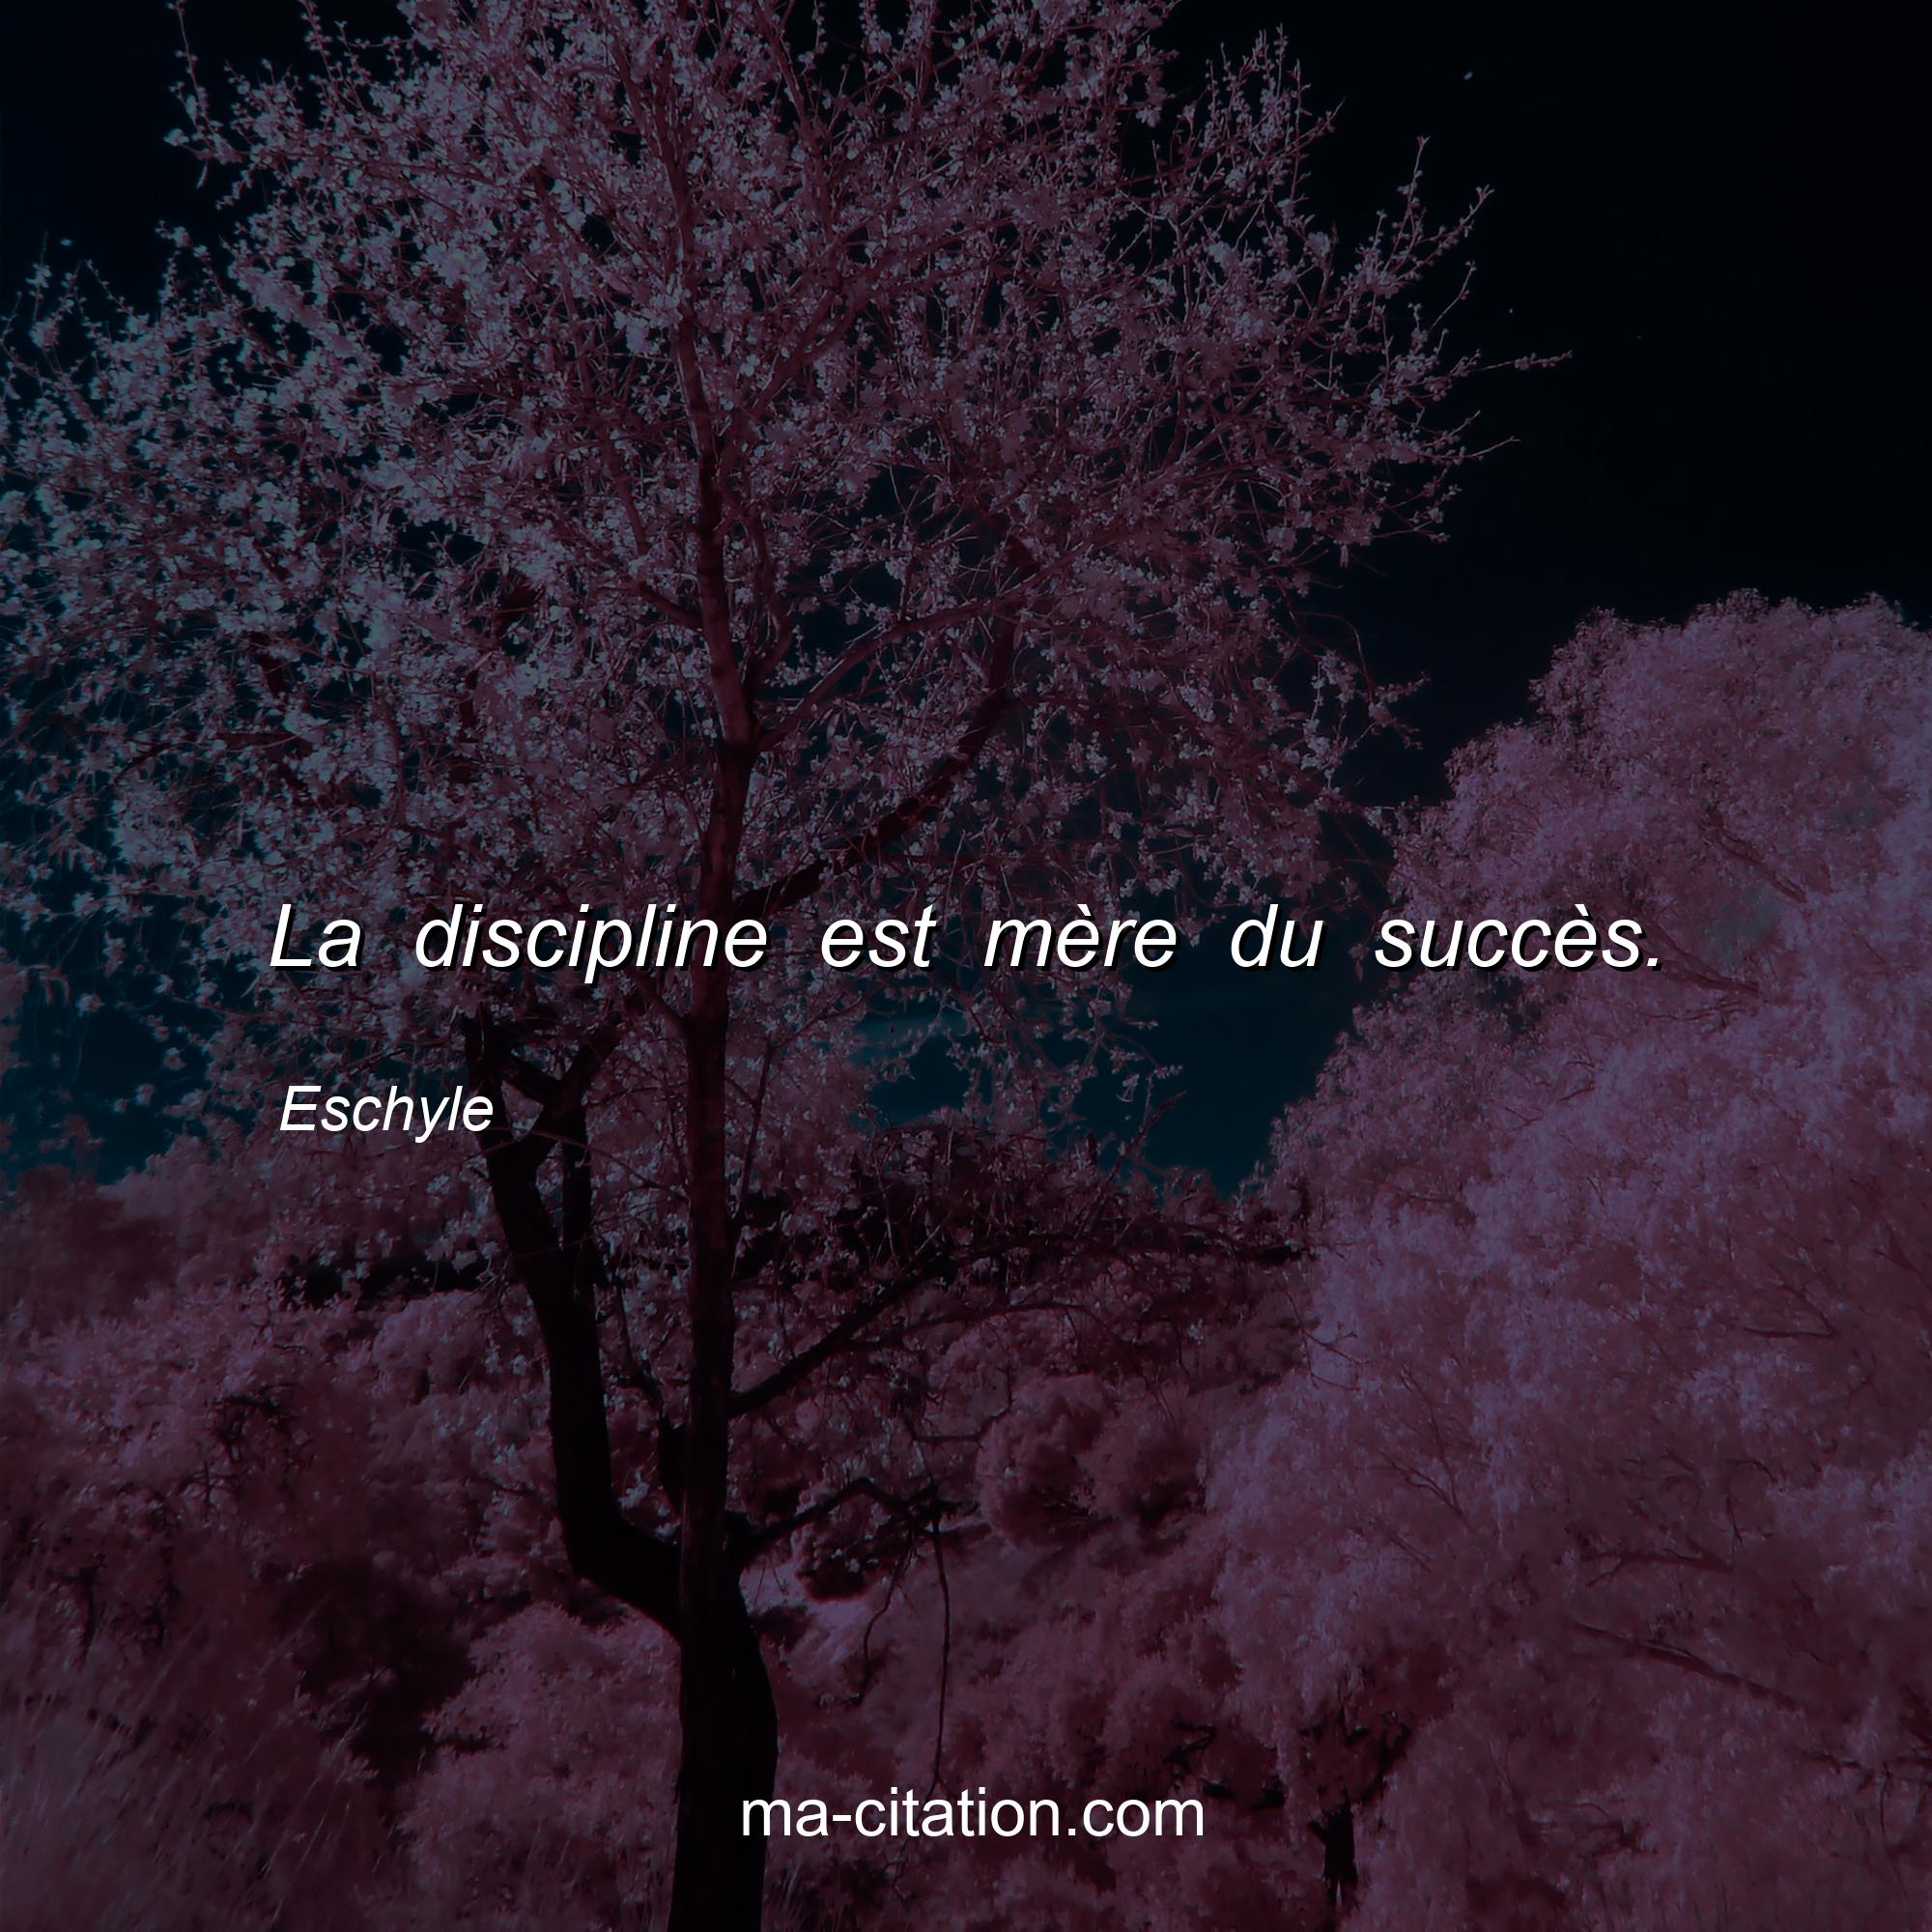 Eschyle : La discipline est mère du succès.